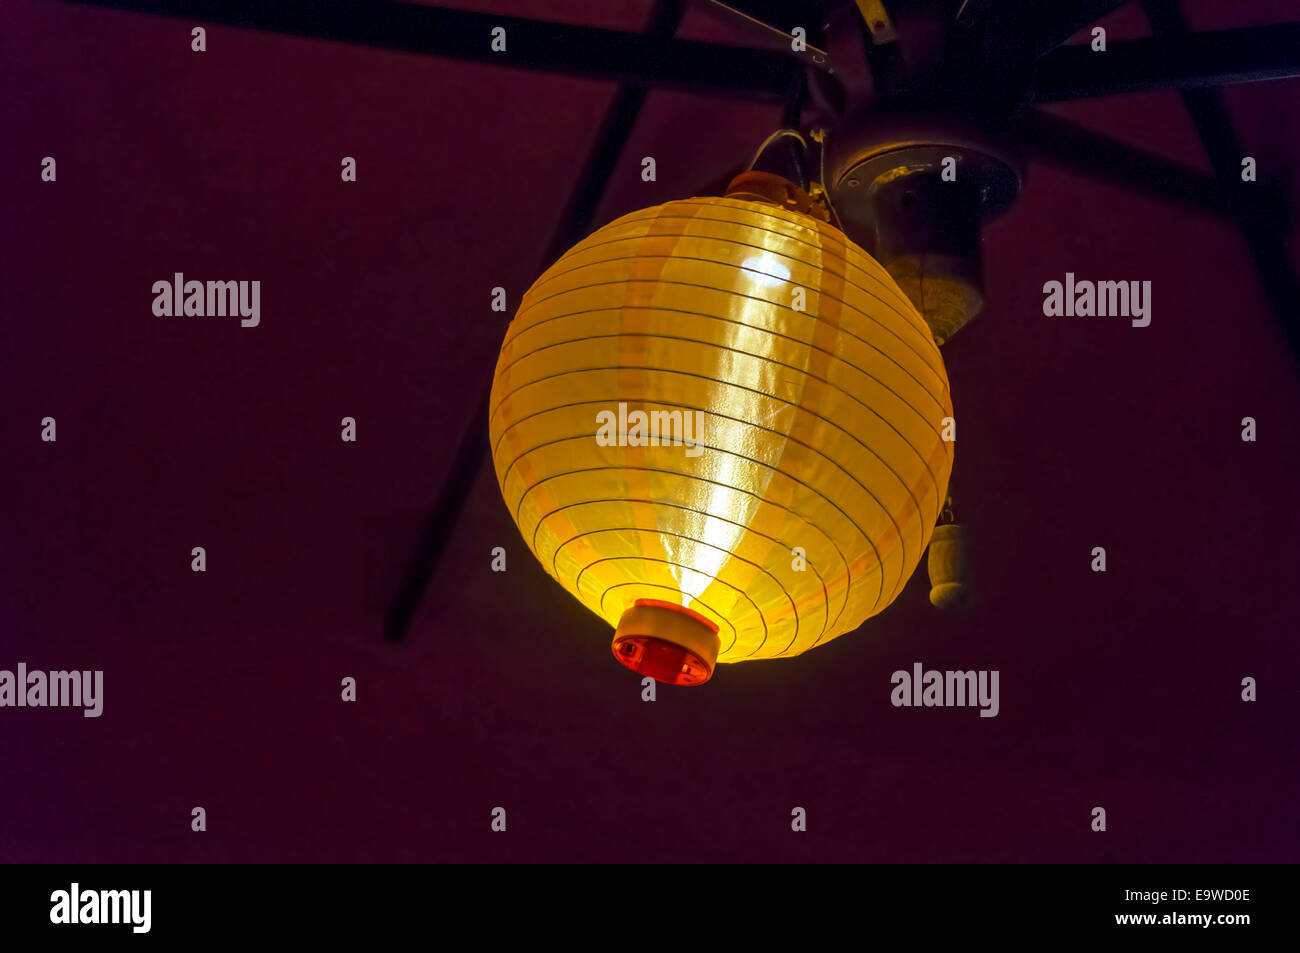 Rund um Seide chinesische oder japanische gerippte Globus leuchtet Laterne Schatten unter einer Terrasse Dach hängen ein helles Gelb in der Dunkelheit. Stockfoto